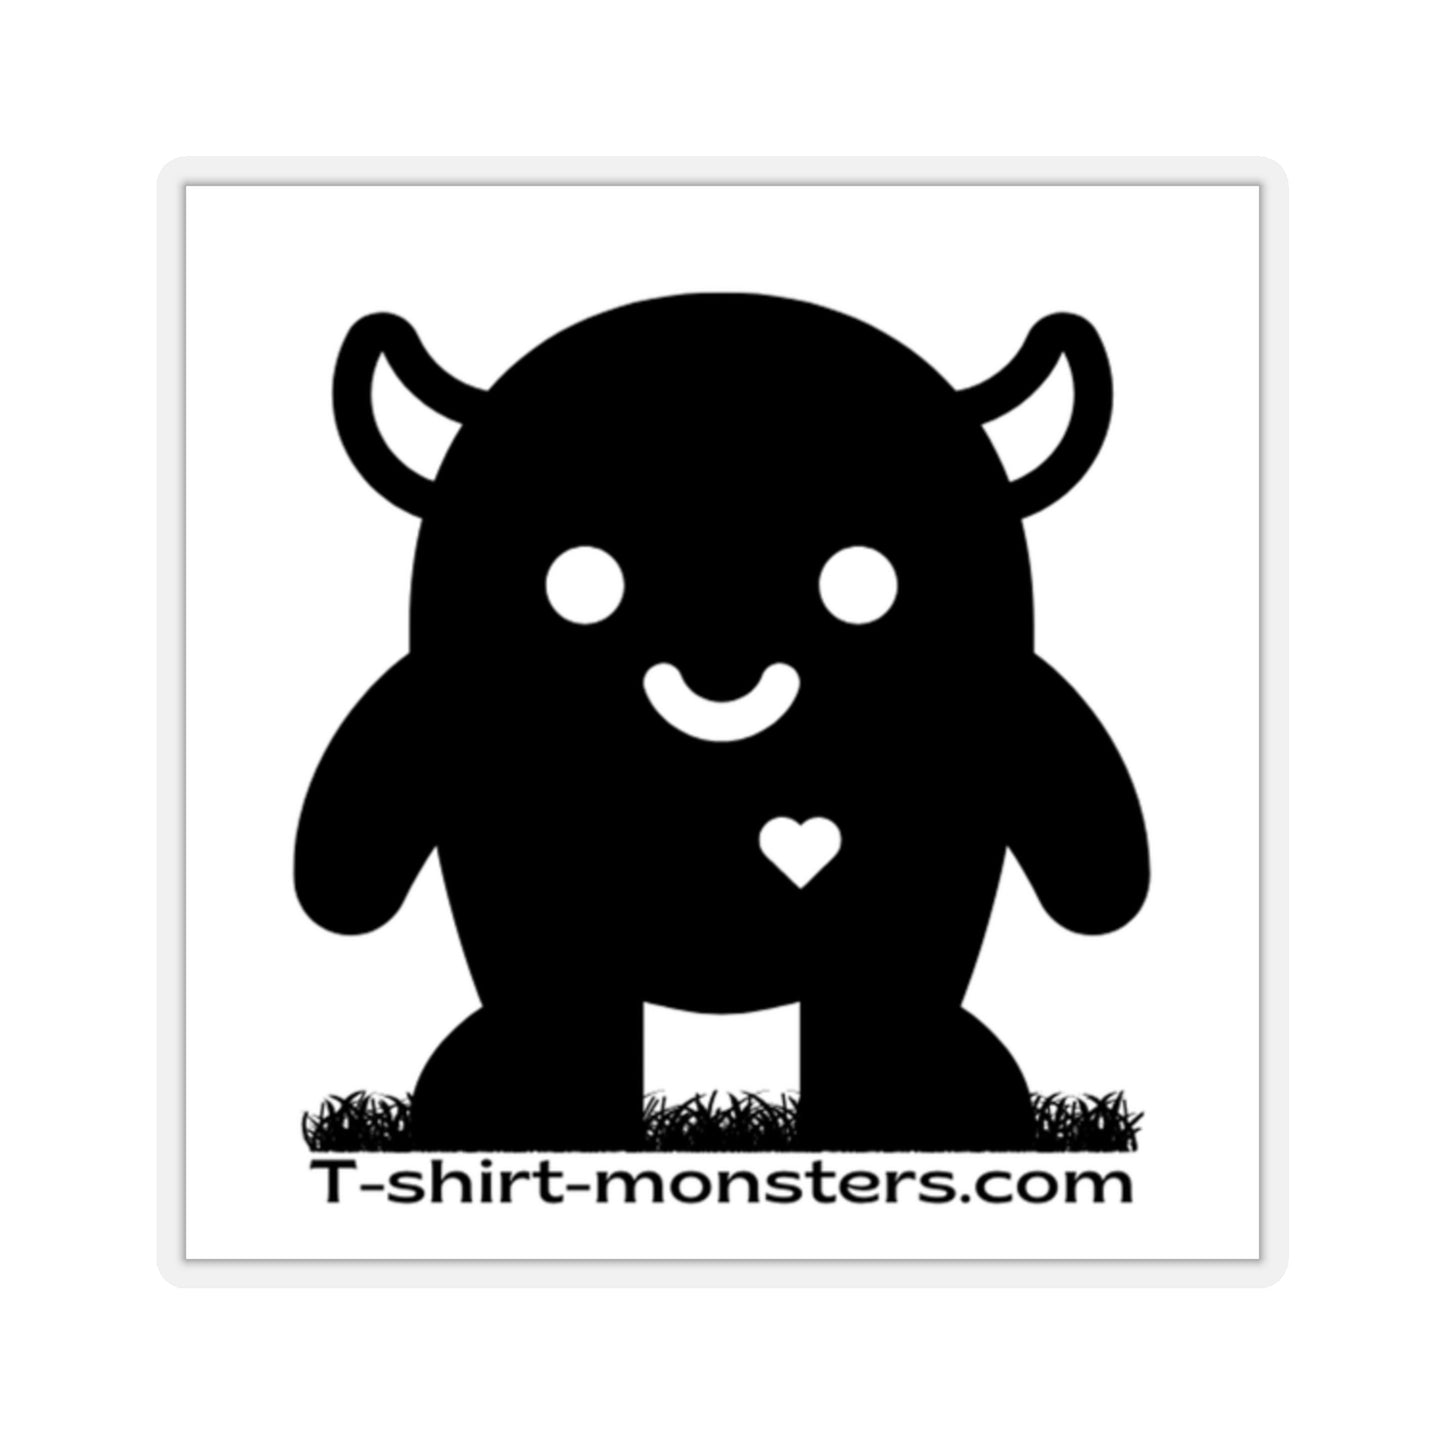 T-shirt-monsters.com Logo Sticker